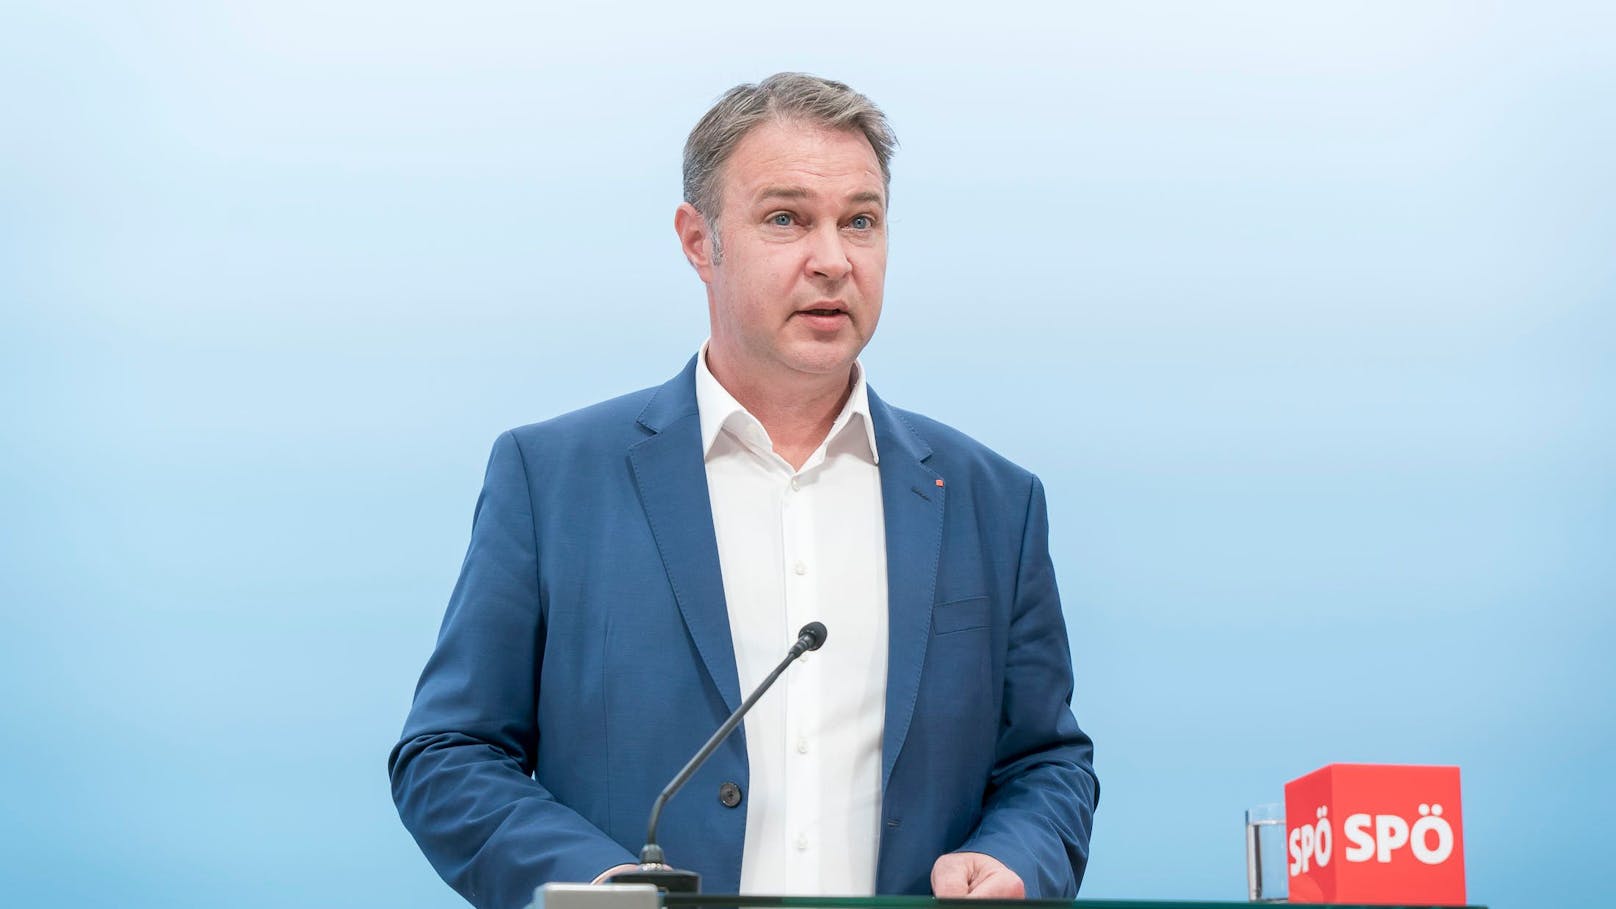 <strong>11.11.2023: SPÖ-Chef Babler steht am Parteitag auf dem Prüfstand.</strong> Seit 158 Tagen steht Andreas Babler an der Spitze der SPÖ. Der Bundesparteitag in Graz gilt als erste Feuerprobe für den Niederösterreicher. <a rel="nofollow" data-li-document-ref="120003859" href="https://www.heute.at/s/-120003859"><strong>Weiterlesen >></strong></a>